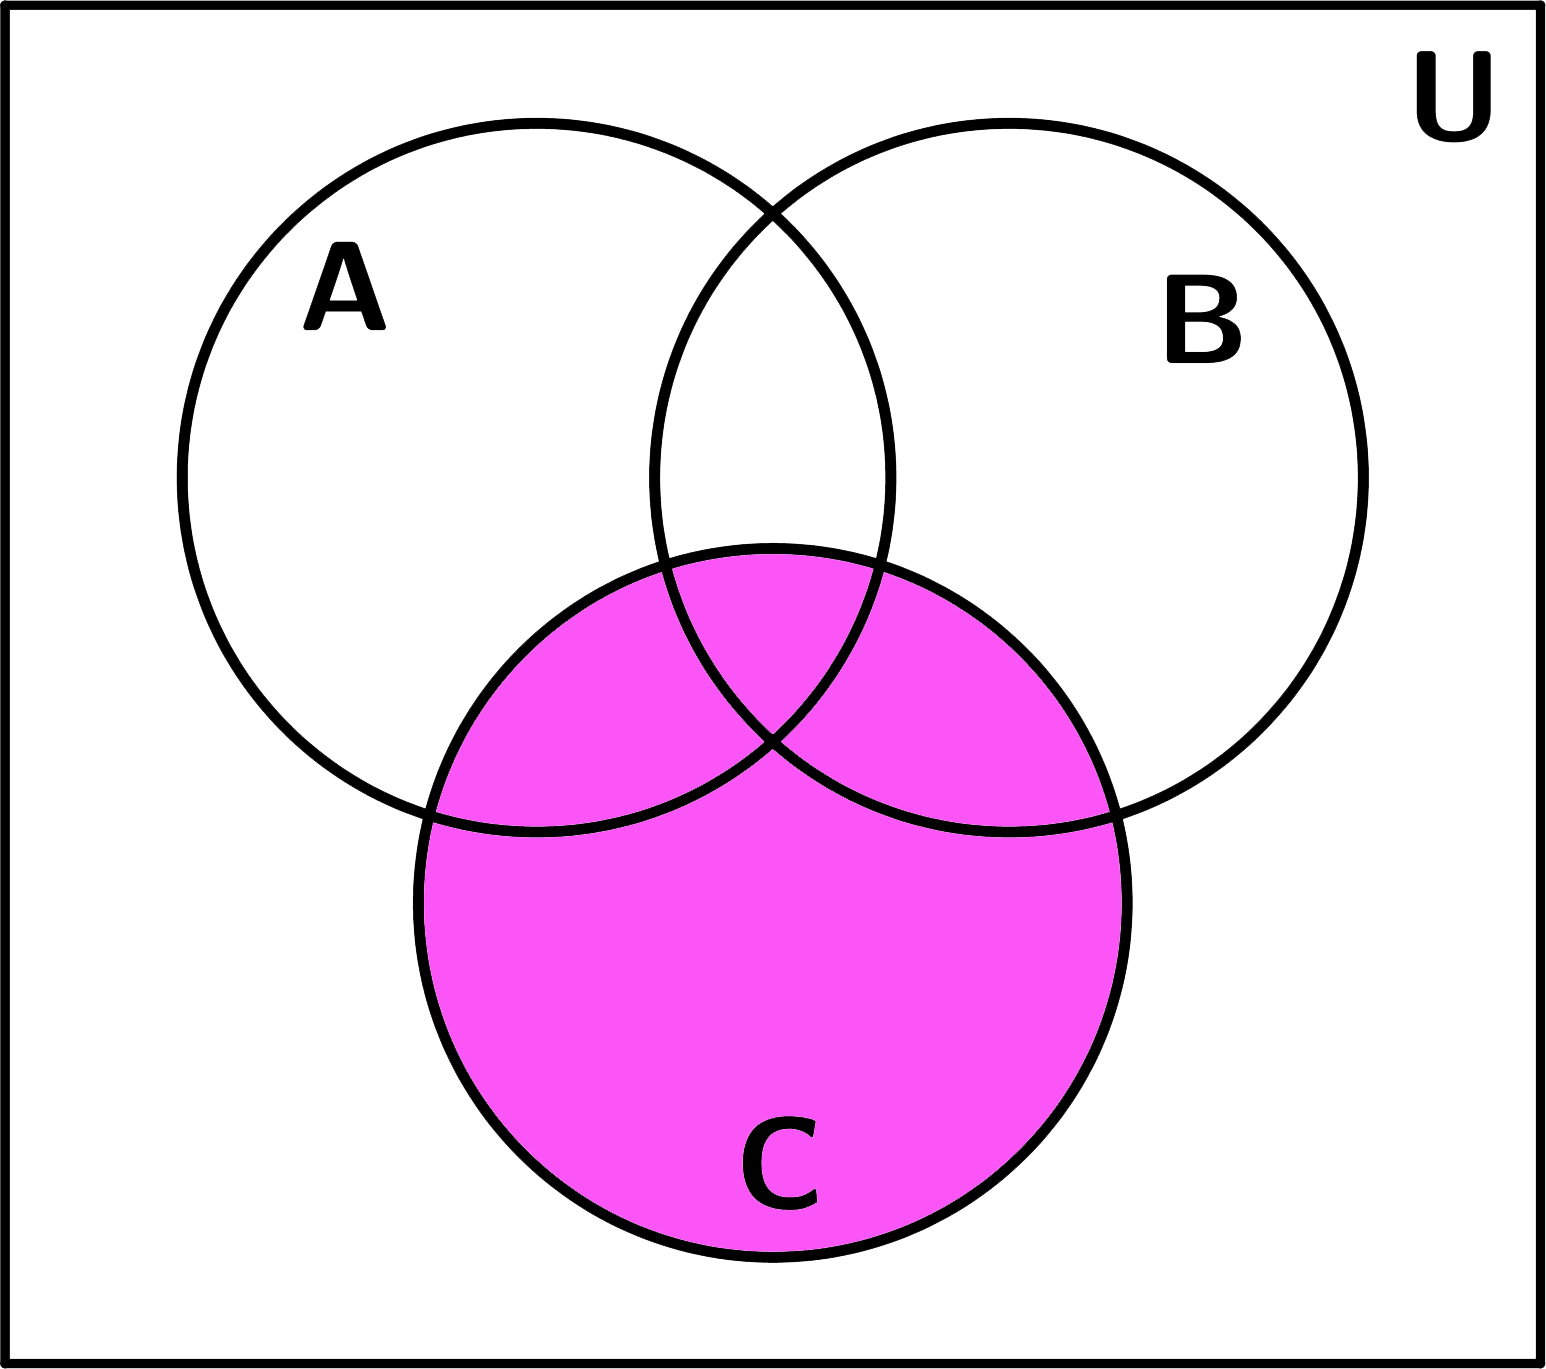 ejemplos-de-diagramas-de-venn-y-conjuntos-conjunto-C